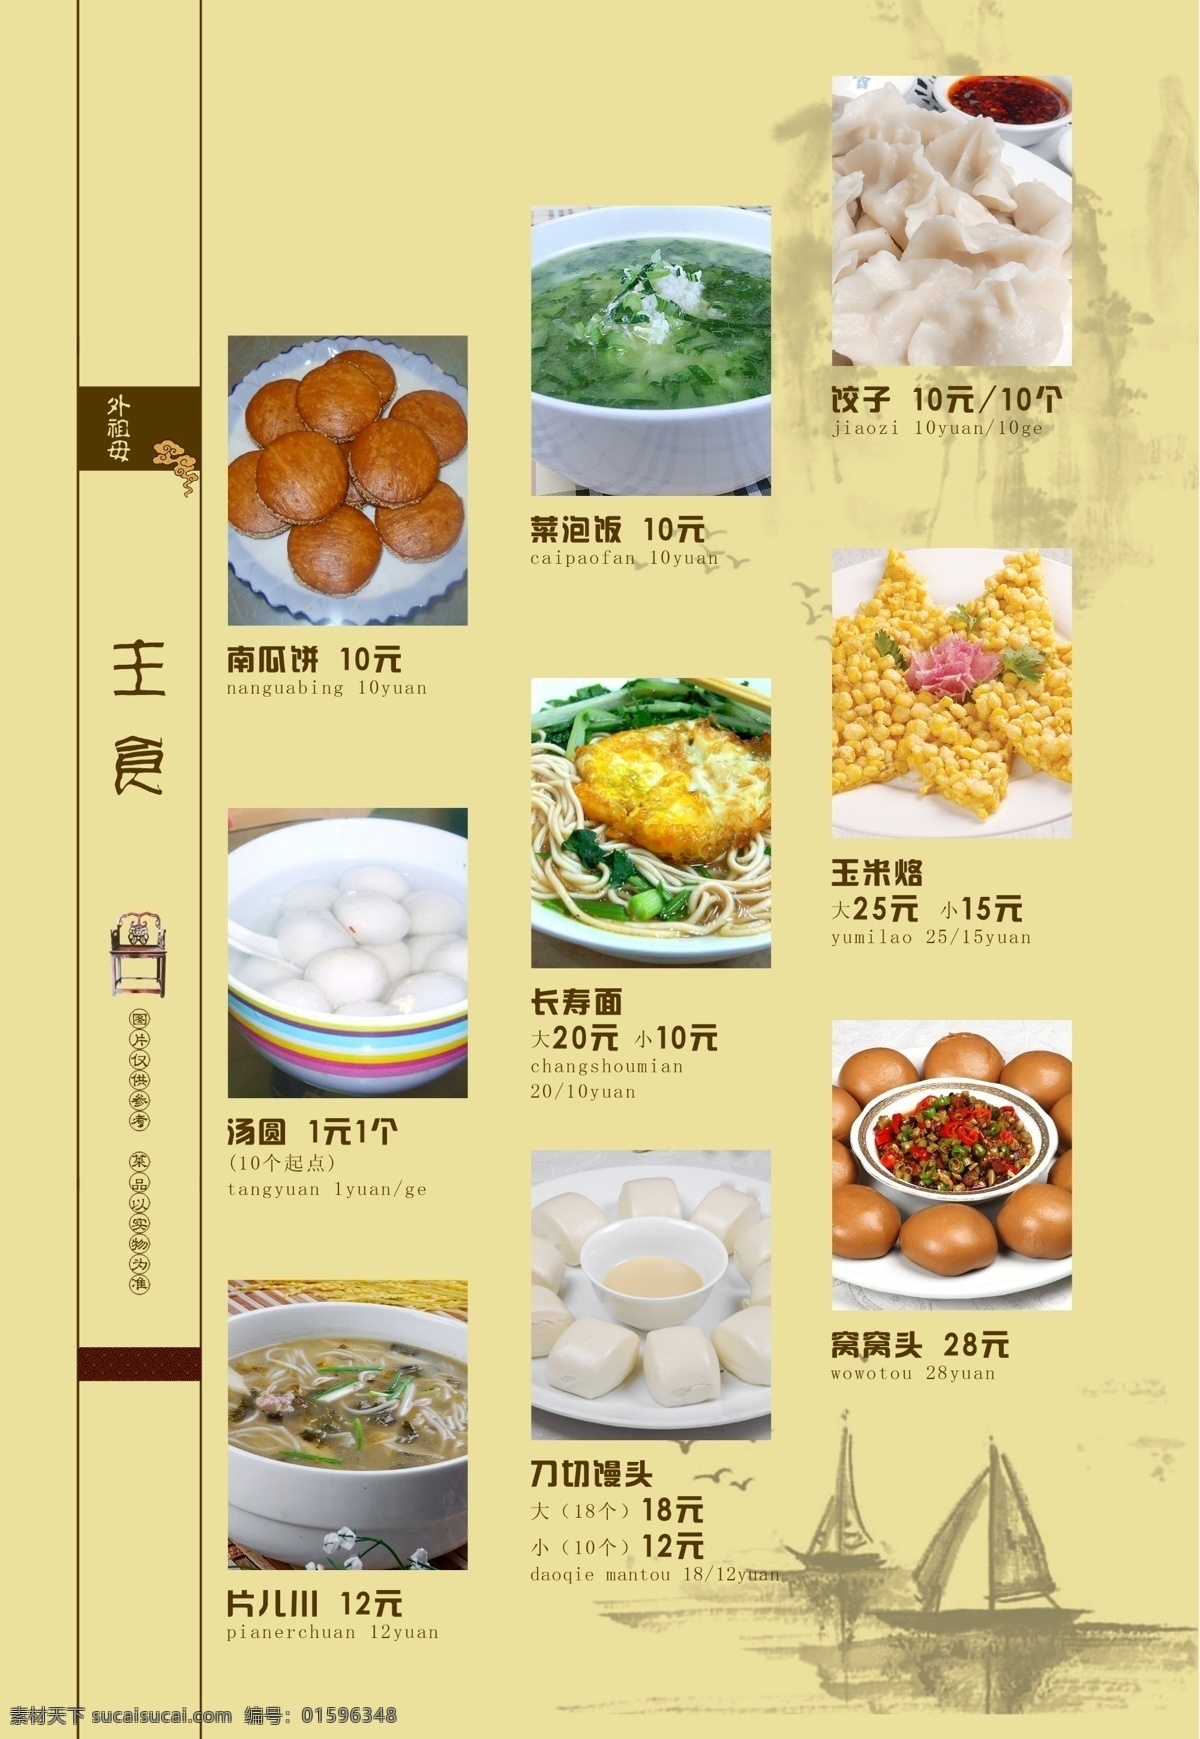 外祖母 餐馆 食品餐饮 菜单菜谱 分层psd 平面广告 海报 设计素材 平面模板 psd源文件 黄色